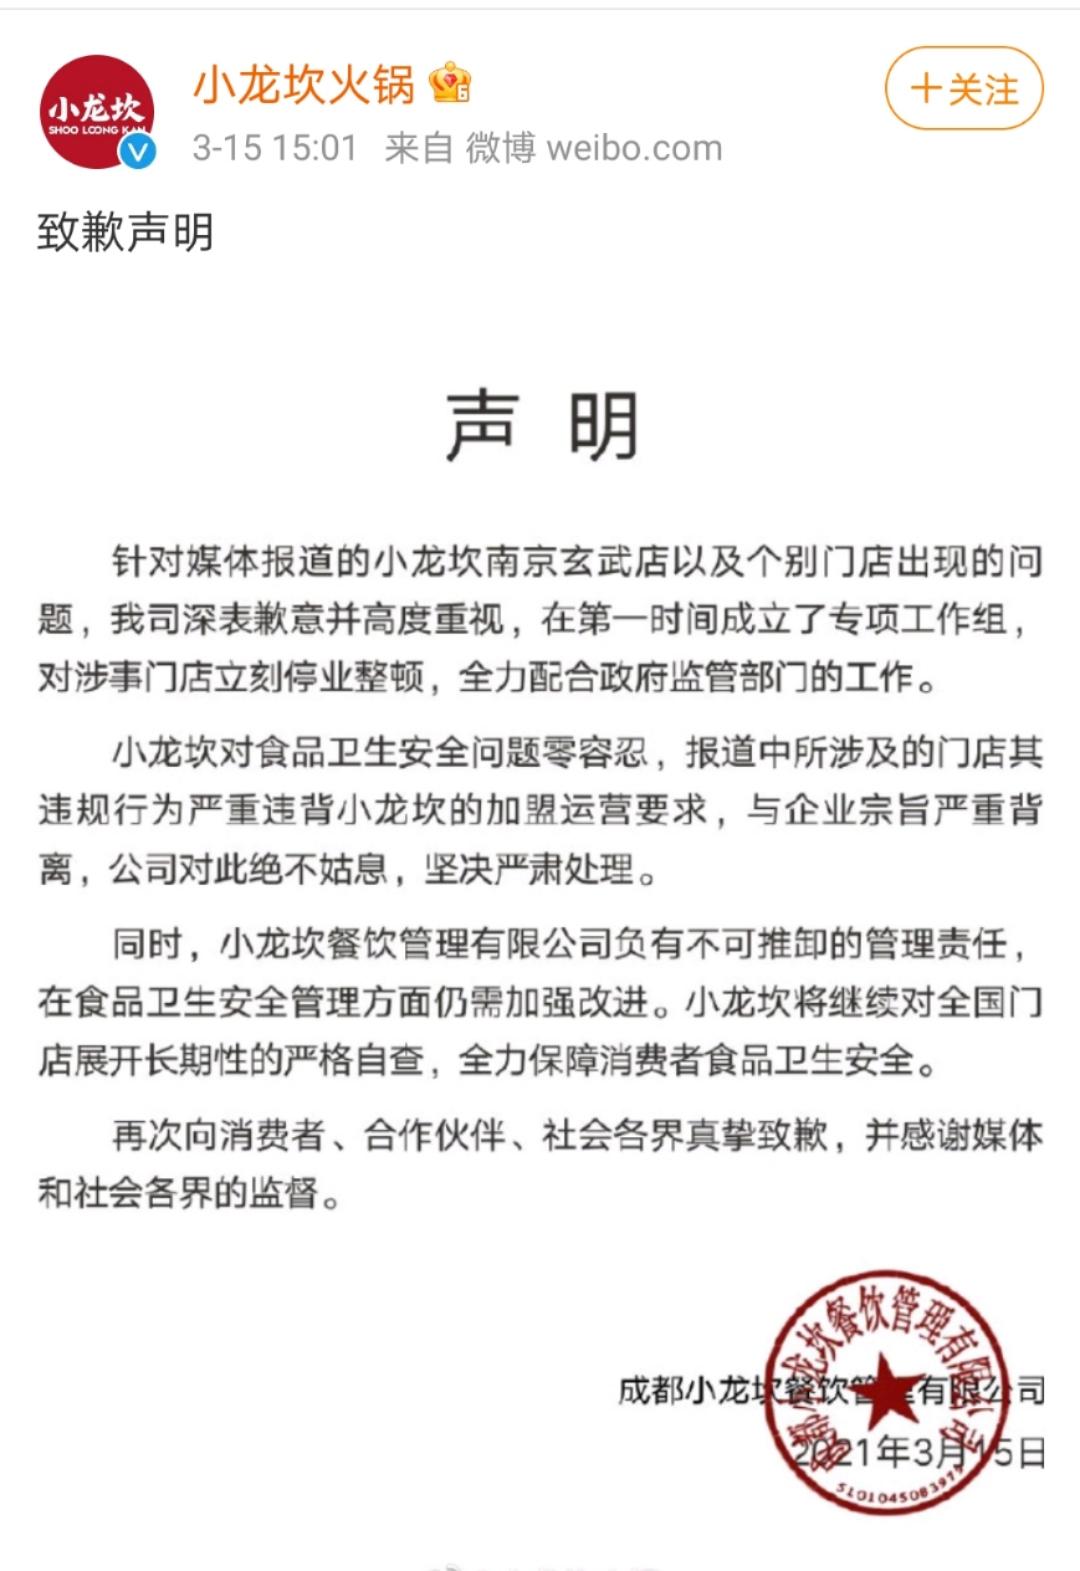 3月15日下午,小龙坎火锅官方微博发表了致歉声明,针对媒体报道的小龙